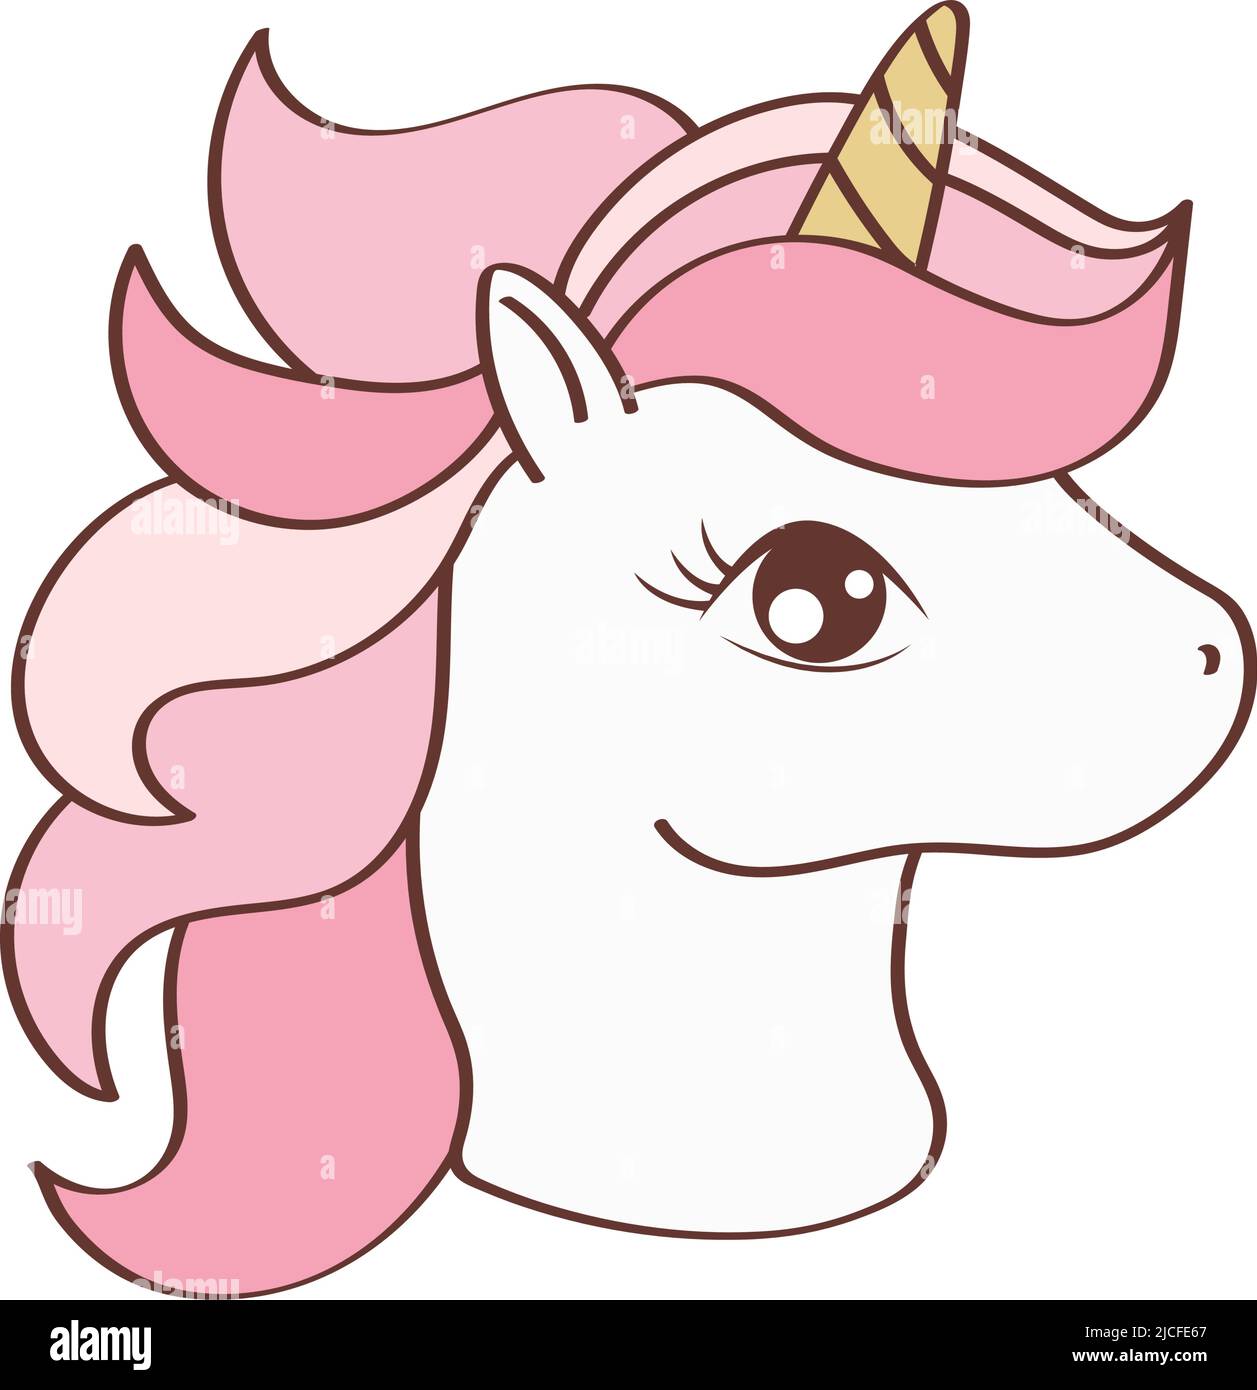 Unicorn Face Clipart Character Design. Adorabile clip Art Unicorn Head.  Illustrazione vettoriale di un animale per stampe per vestiti, adesivi,  doccia del bambino Immagine e Vettoriale - Alamy